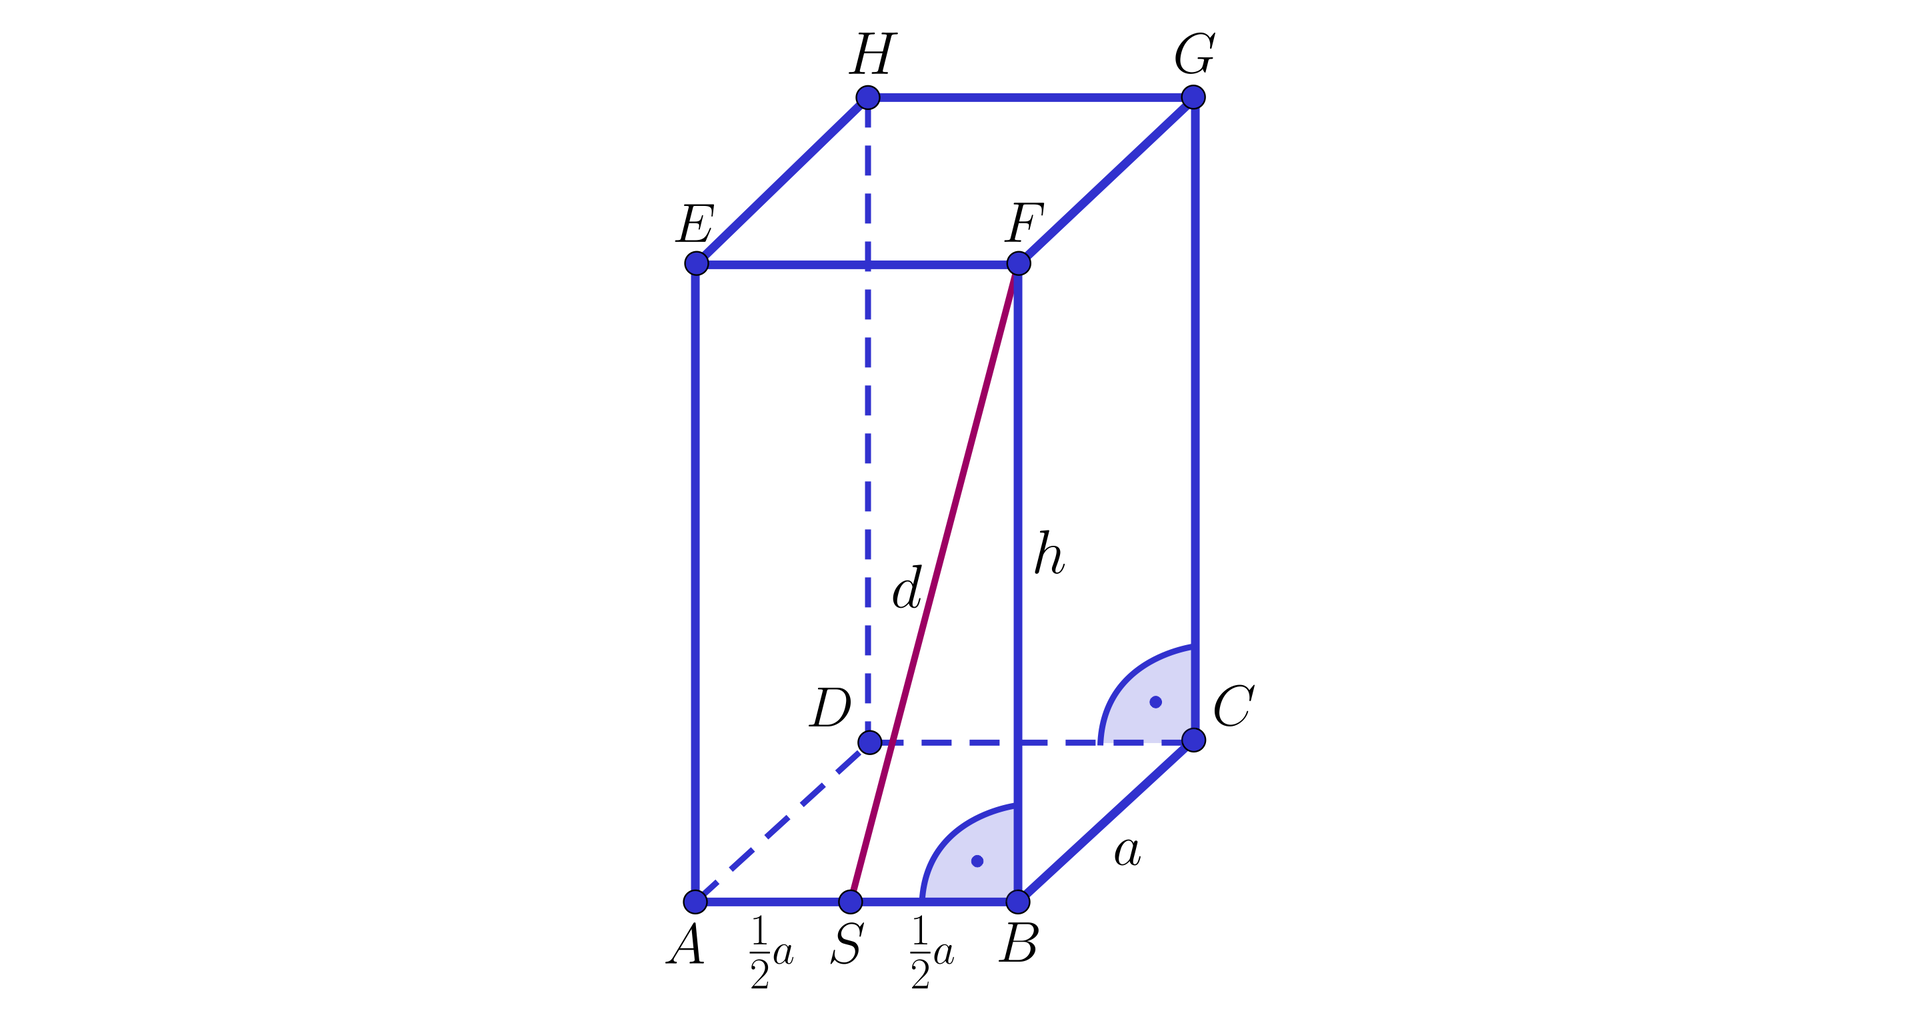 Ilustracja przedstawia graniastosłup prawidłowy czworokątny A B C D E F G H, krawędzie podstawy mają długość a, a wysokość długość h.  Z punktu F poprowadzono prostą przecinającą krawędź podstawy w punkcie S. dzieli on krawędź podstawy na pół. Odcinek F S leży na ścianie bocznej tego graniastosłupa.